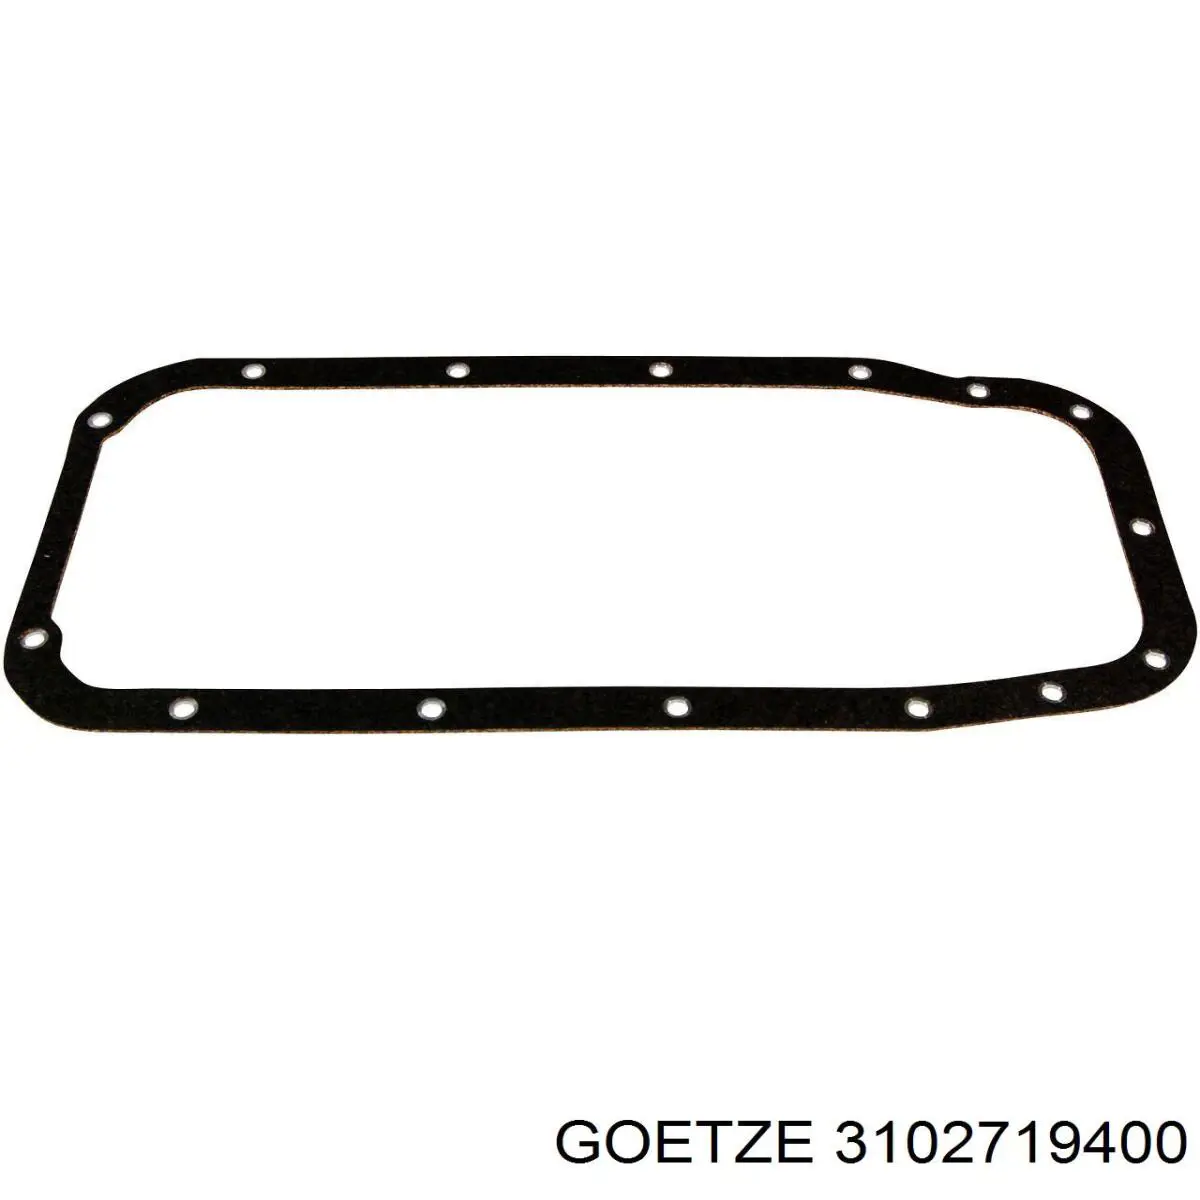 Прокладка поддона картера двигателя Goetze 3102719400